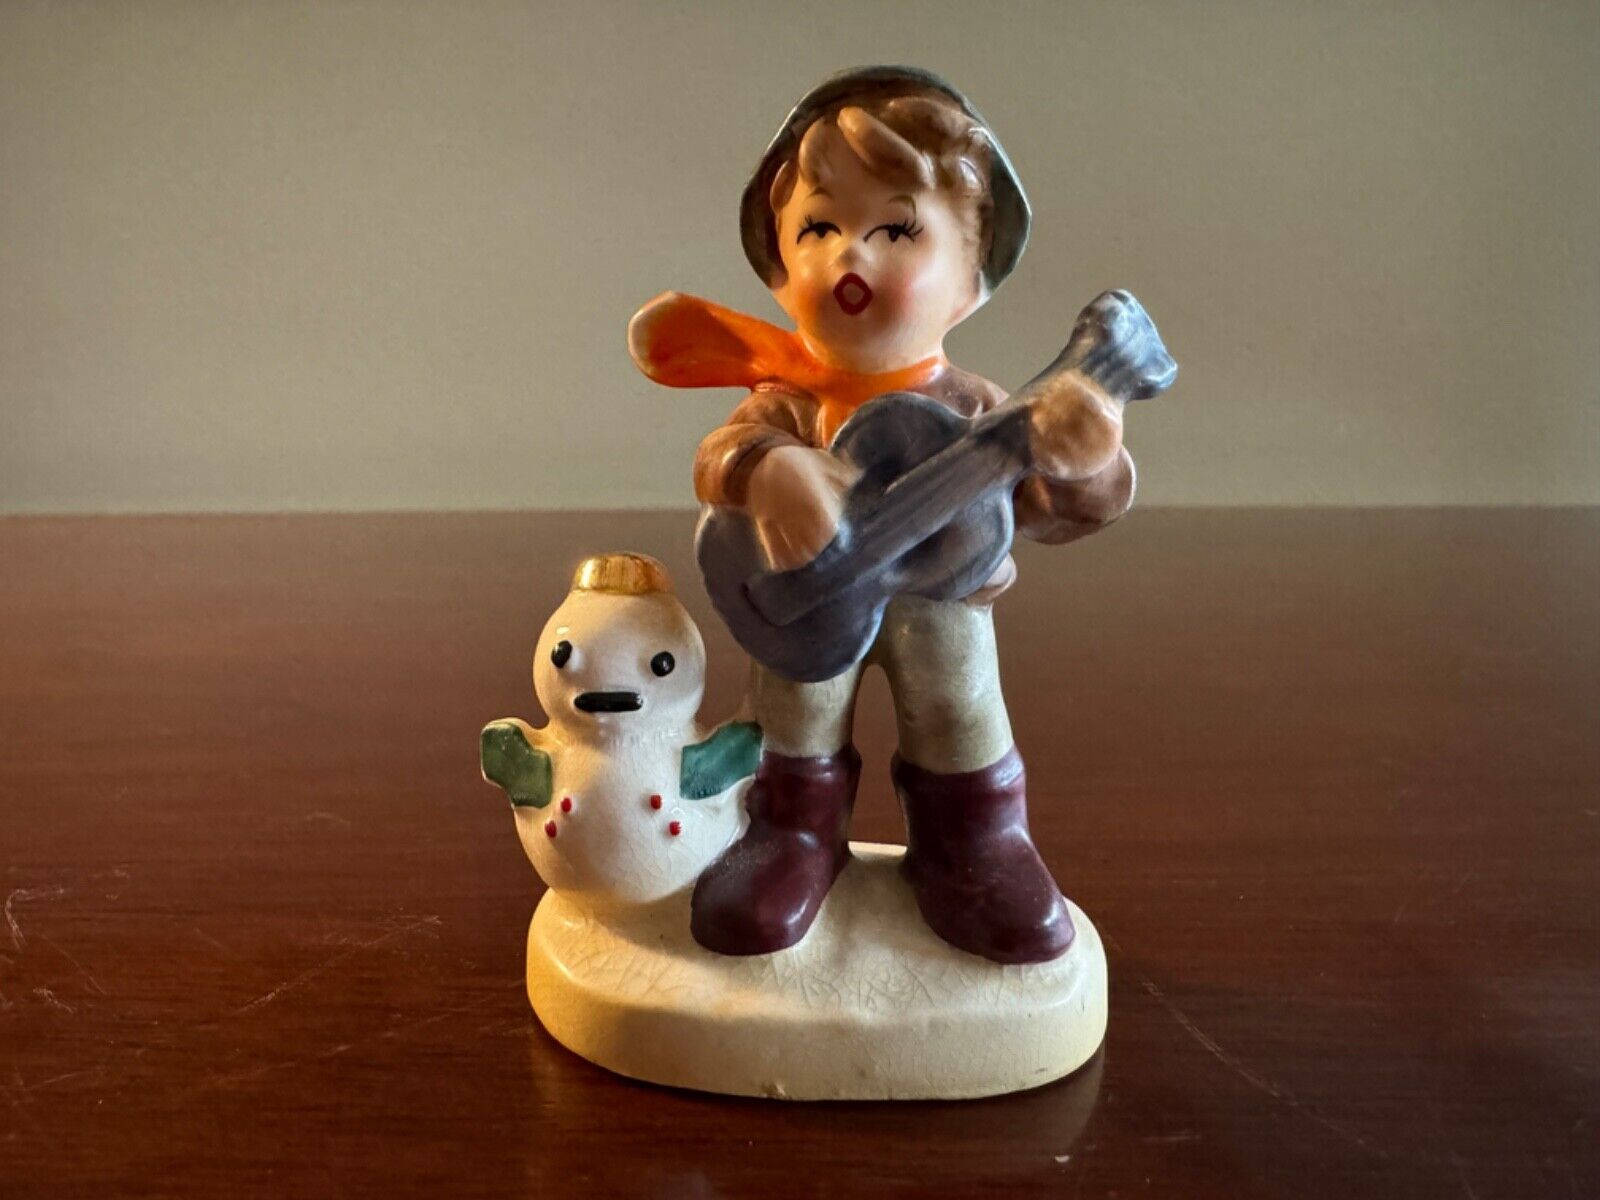 Vintage Porcelain Figurine Boy w/ Guitar & Snowman Napcoware Japan MINT